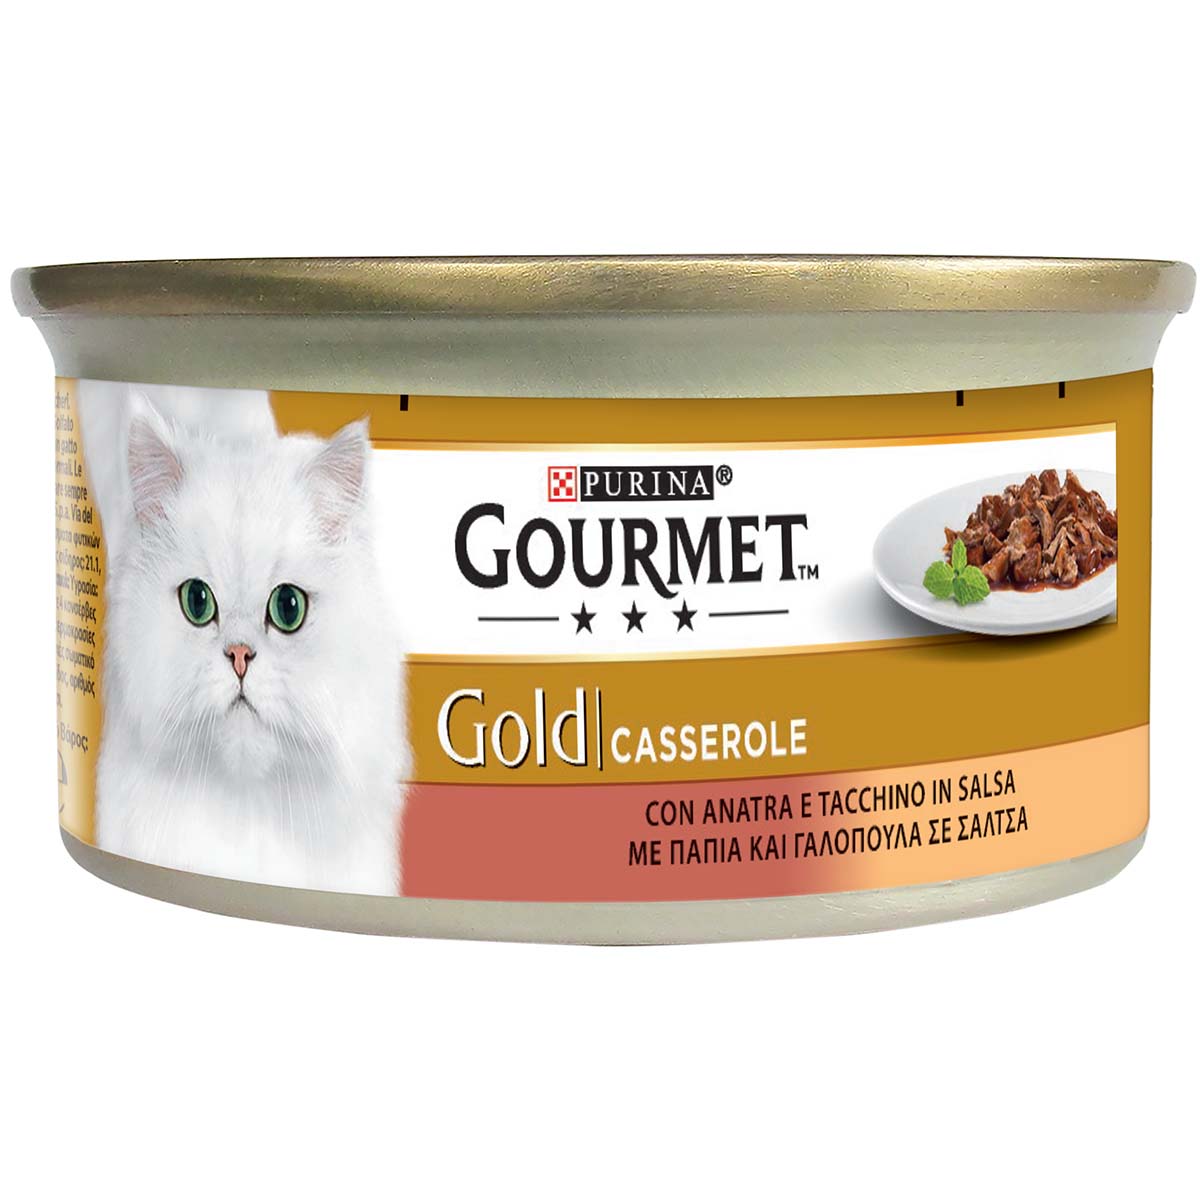 GOURMET GOLD Casserole con Anatra e Tacchino in salsa